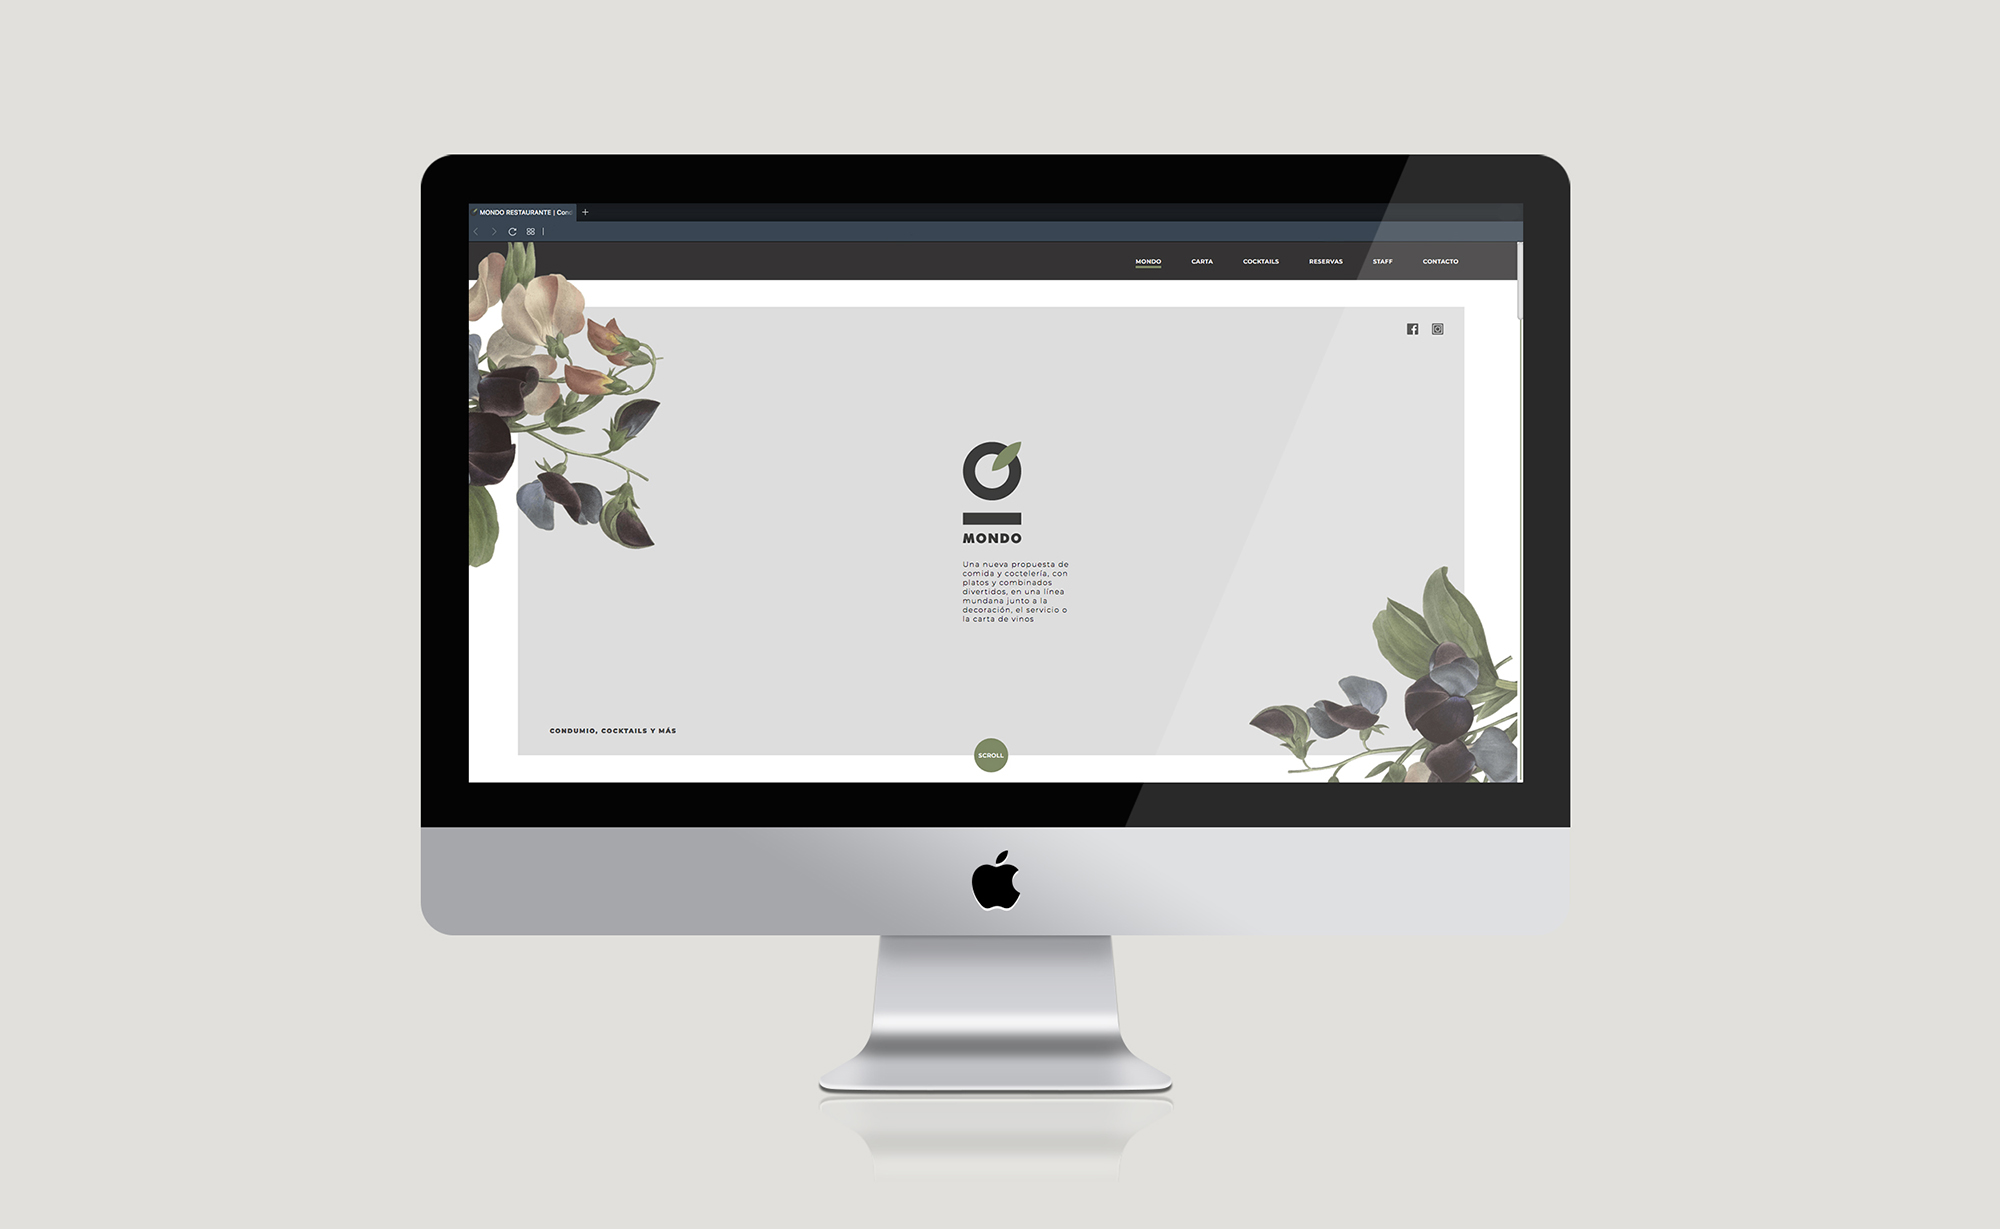 Diseño y desarrollo de website corporativo para restaurante Mondo. Vista homepage sobremesa.